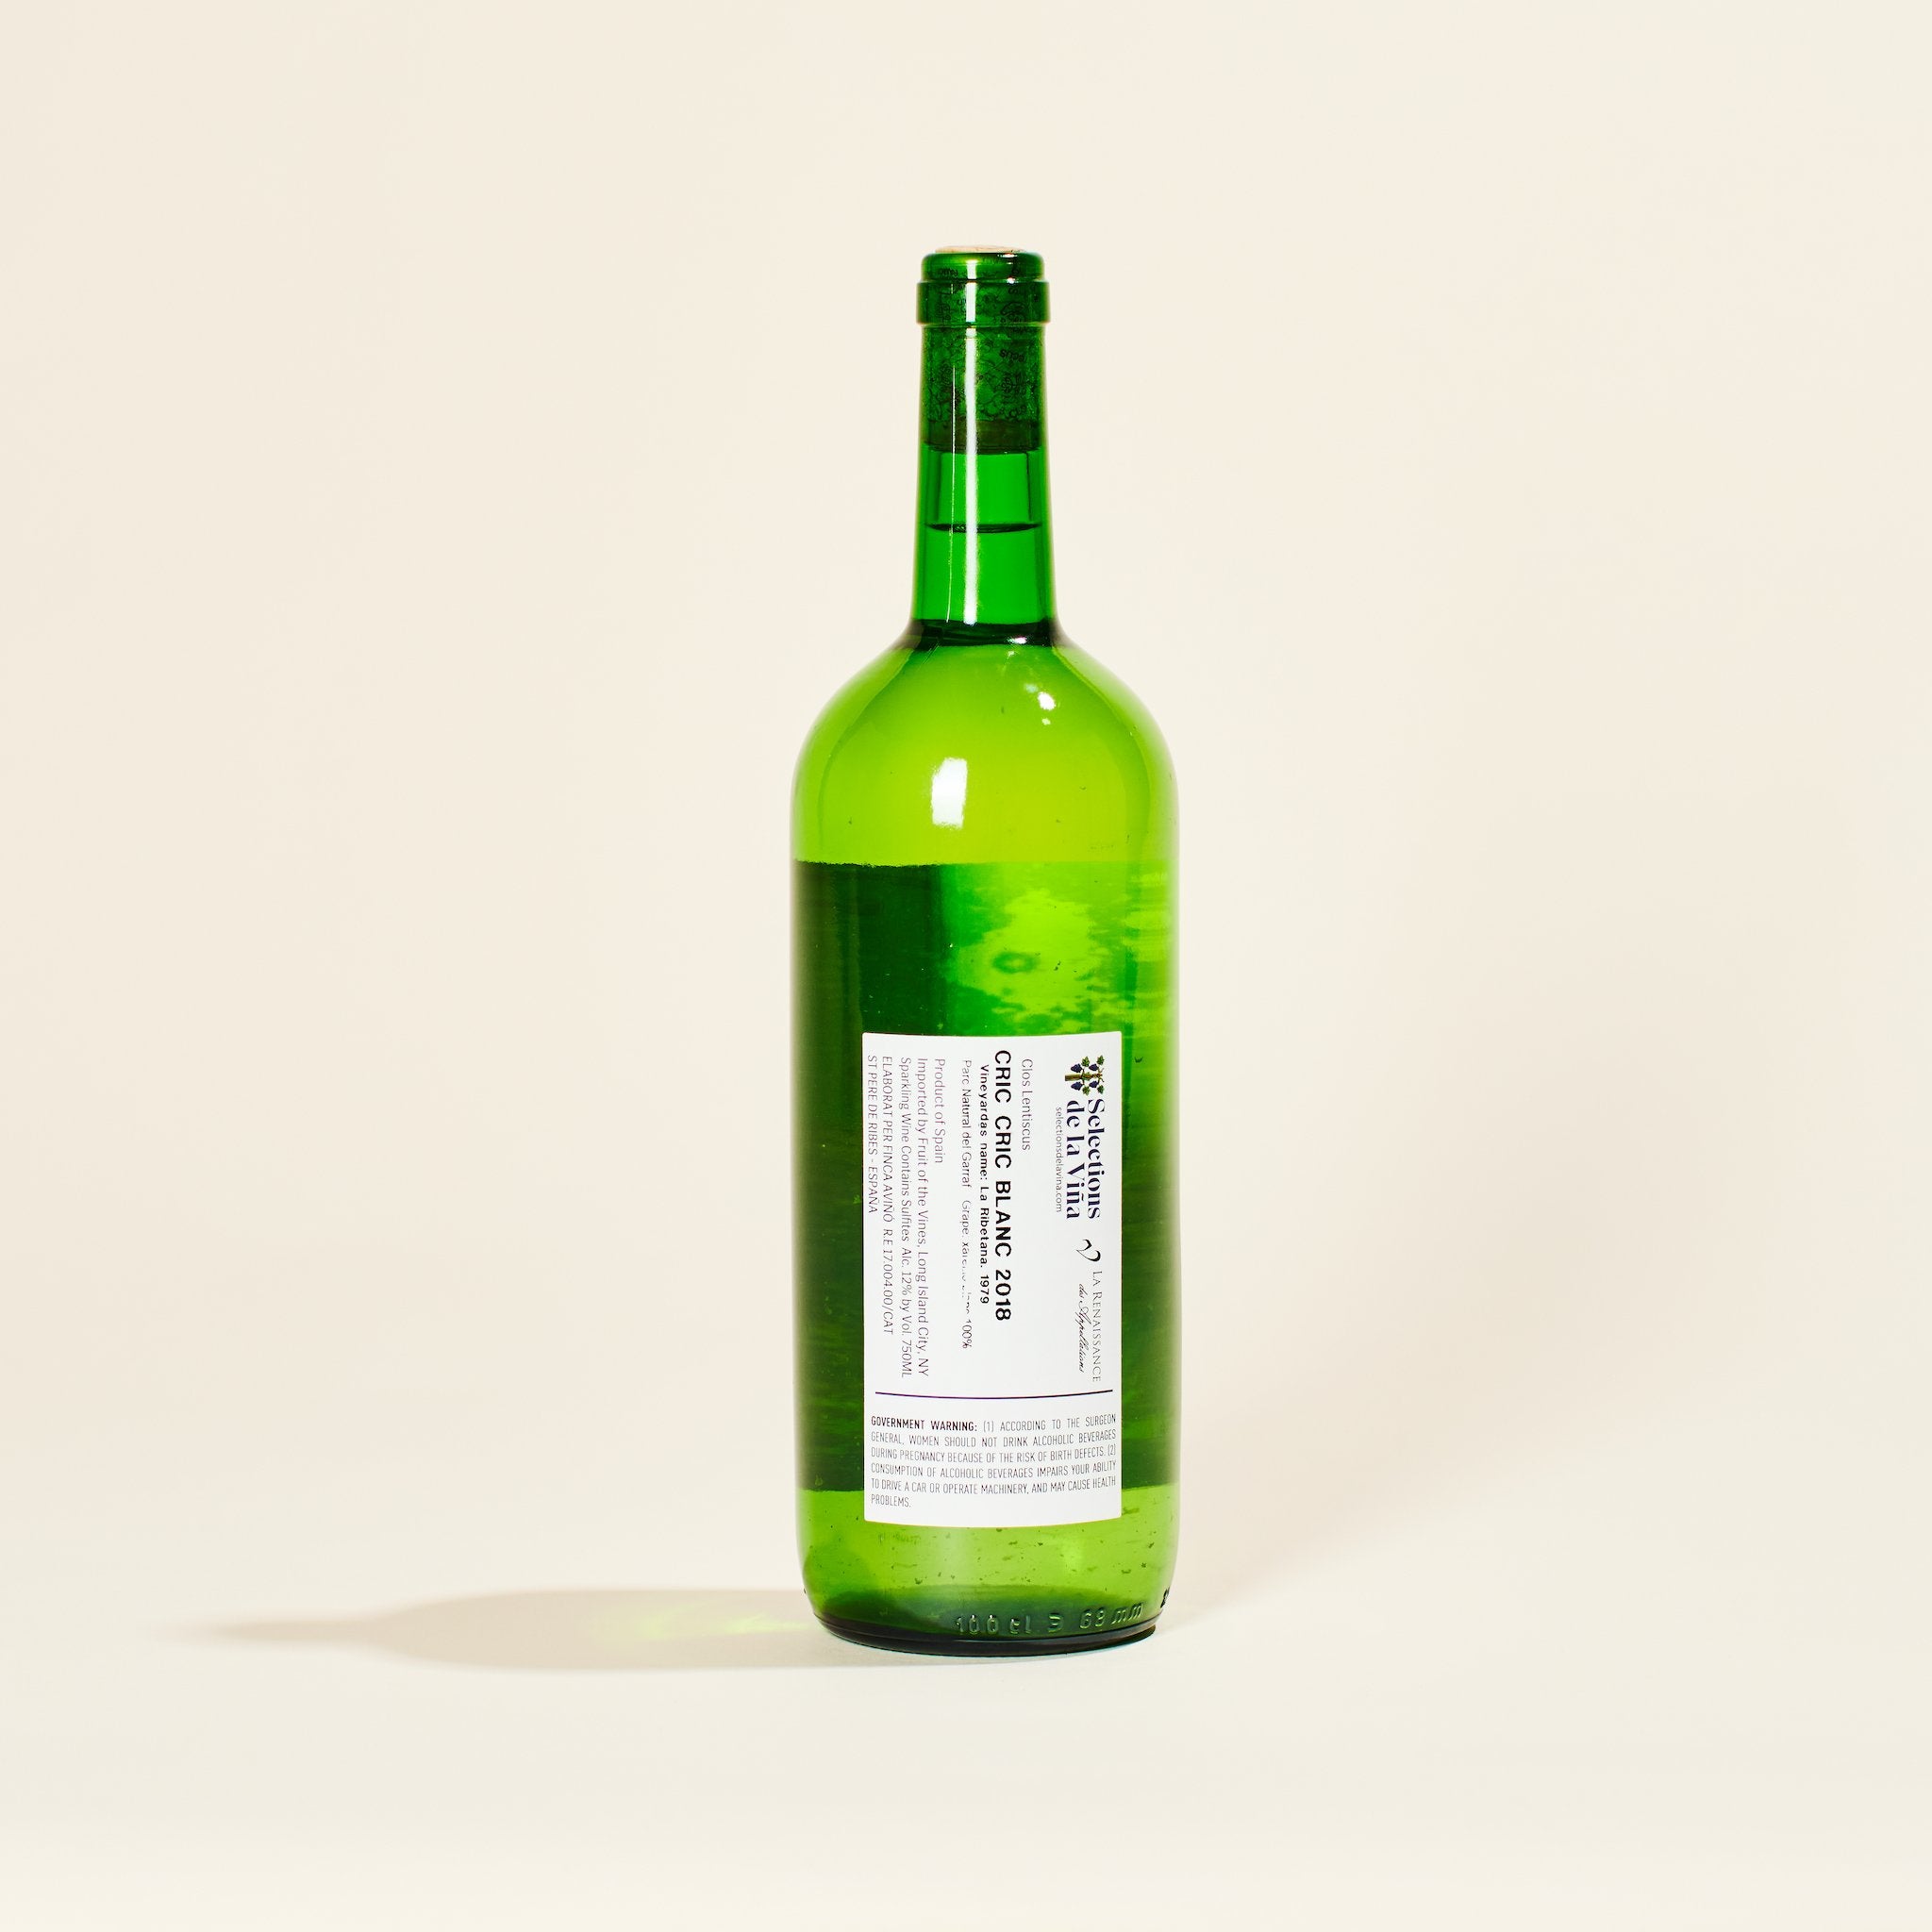 natural white wine penedes spain cric clos lentiscus